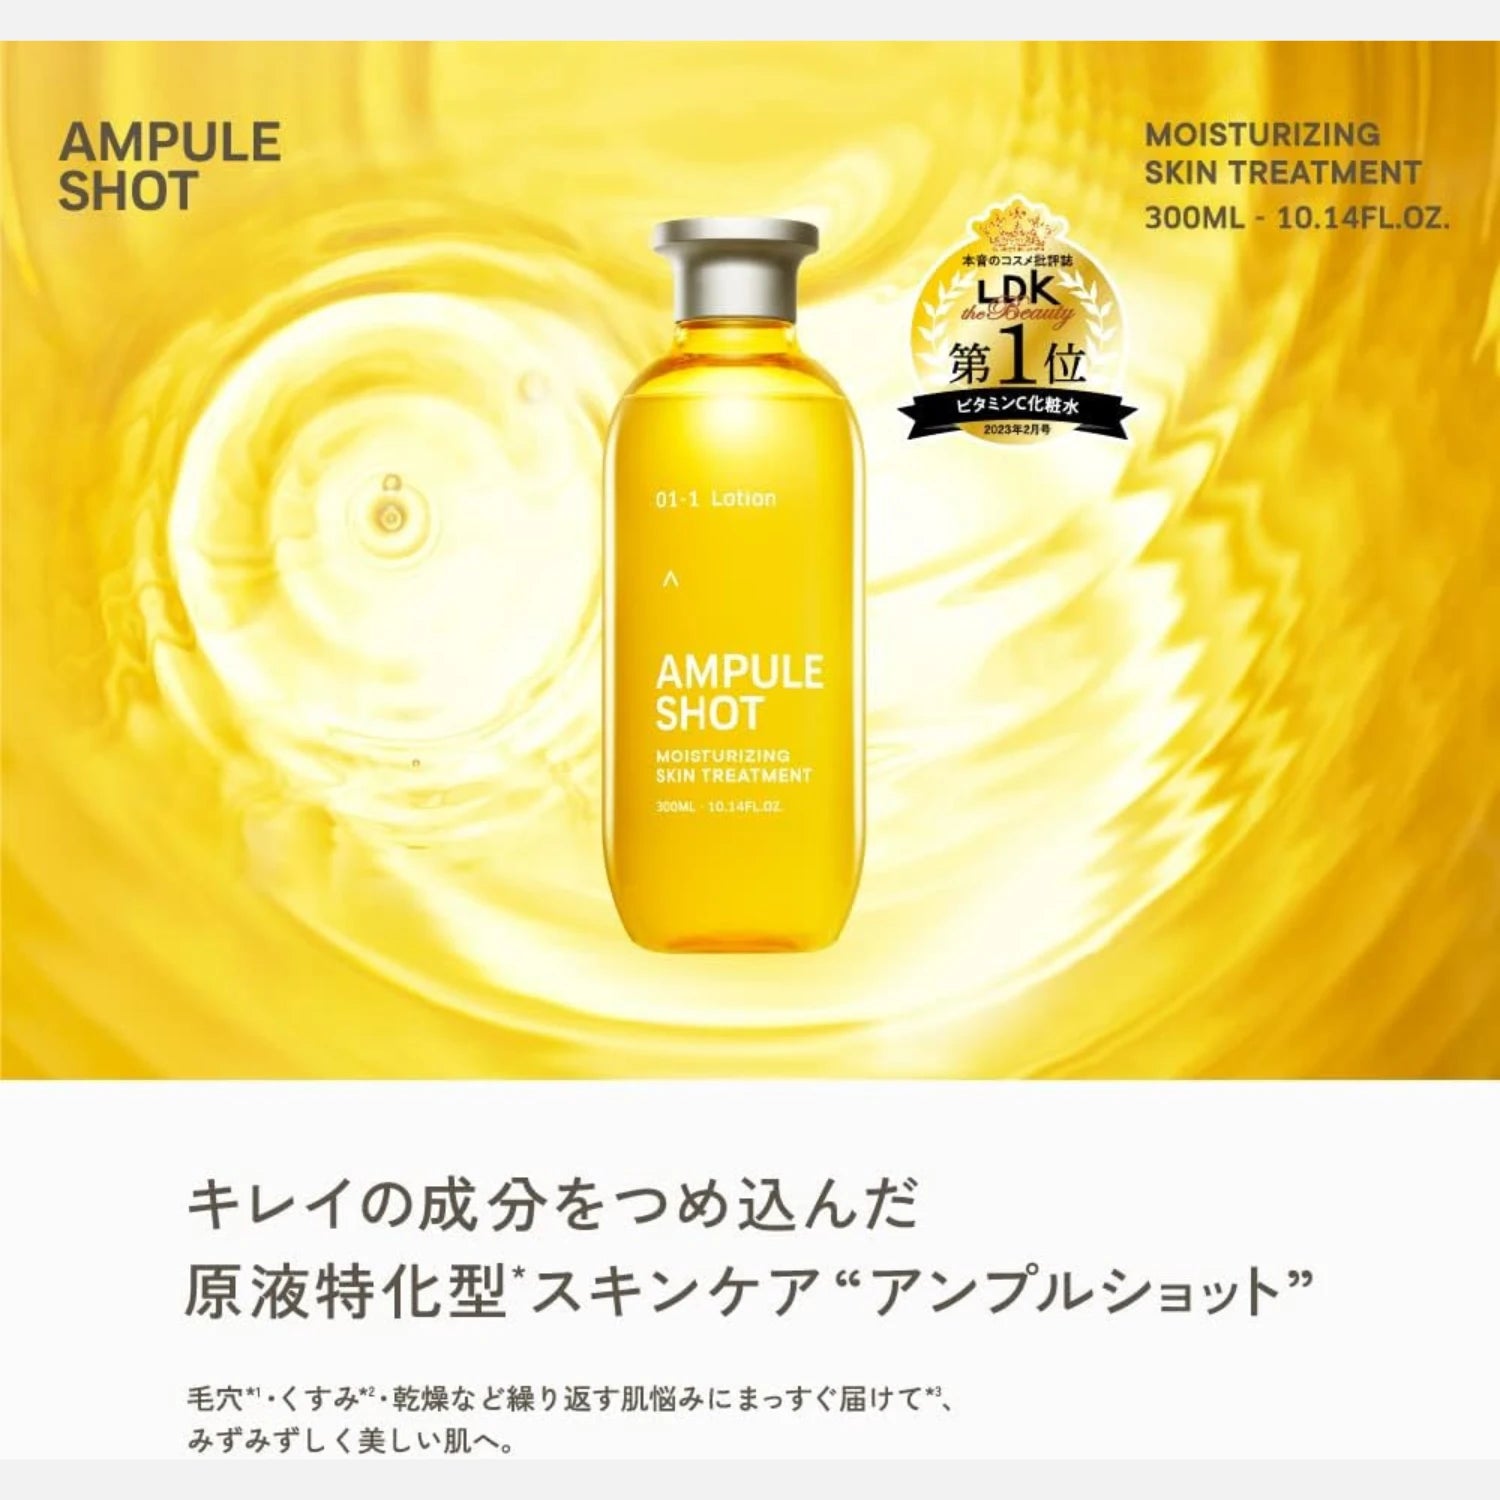 Ampule Shot Vitamim C Skin Treatment Lotion 300ml - Buy Me Japan